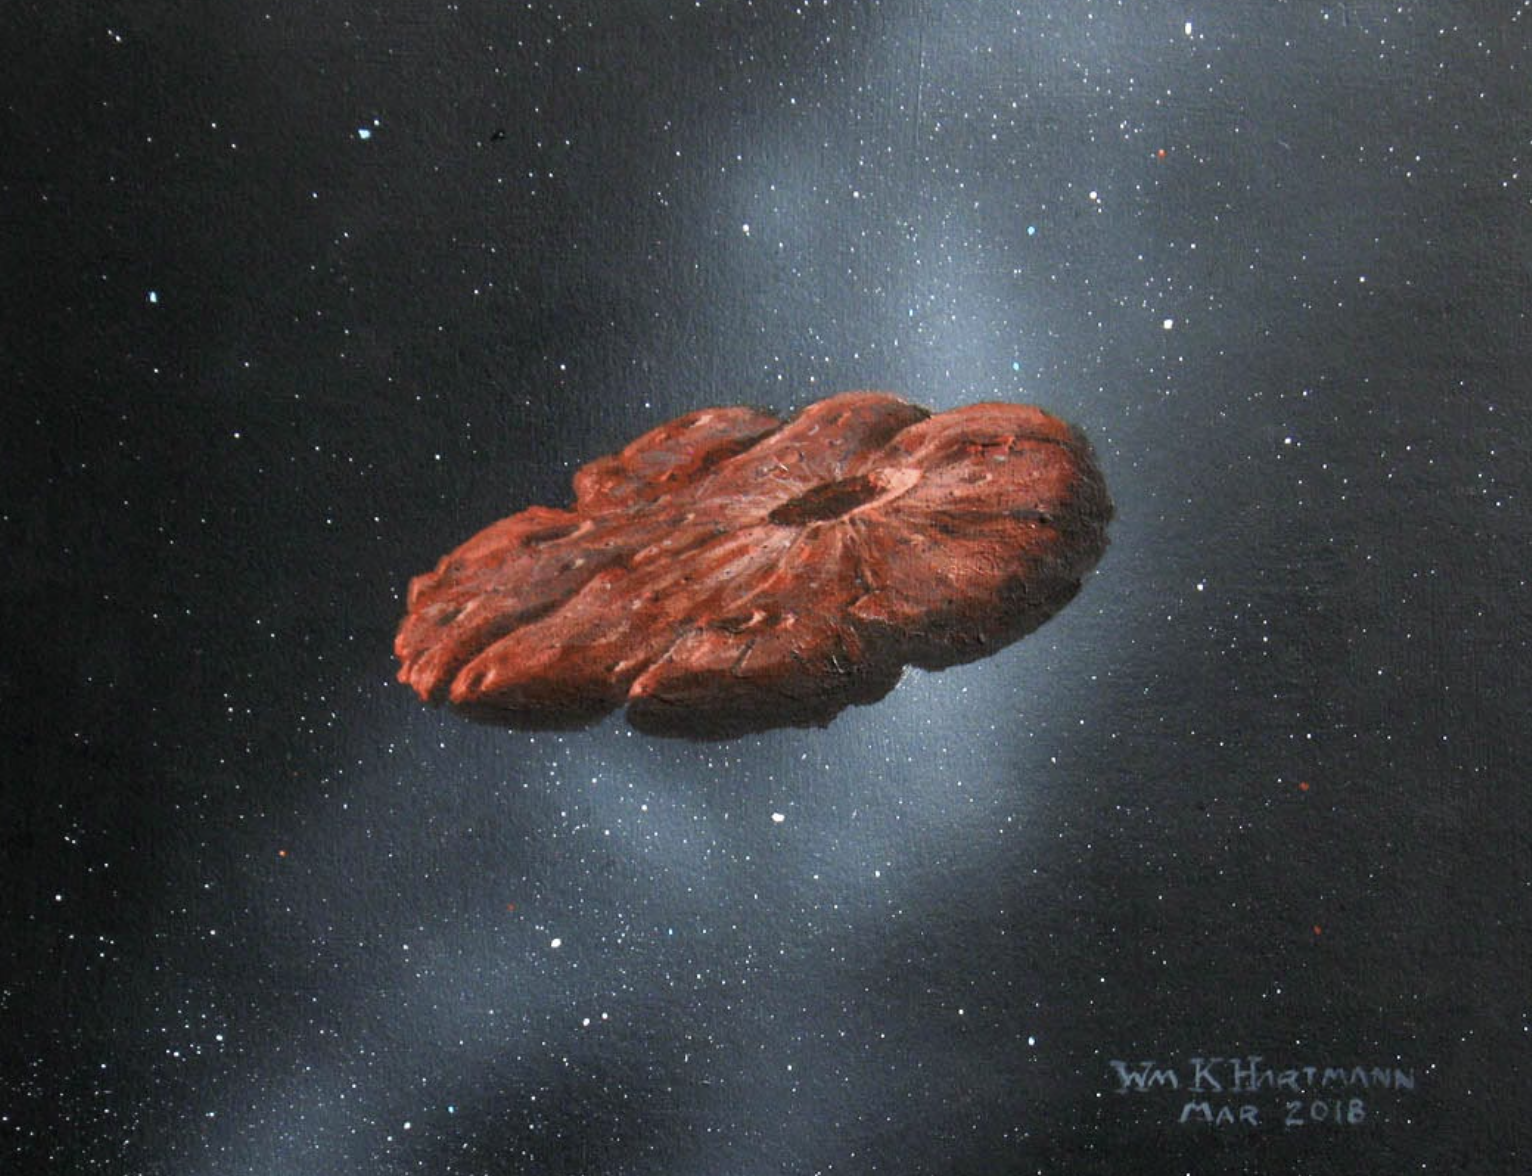 Este sería el verdadero origen de Oumuamua